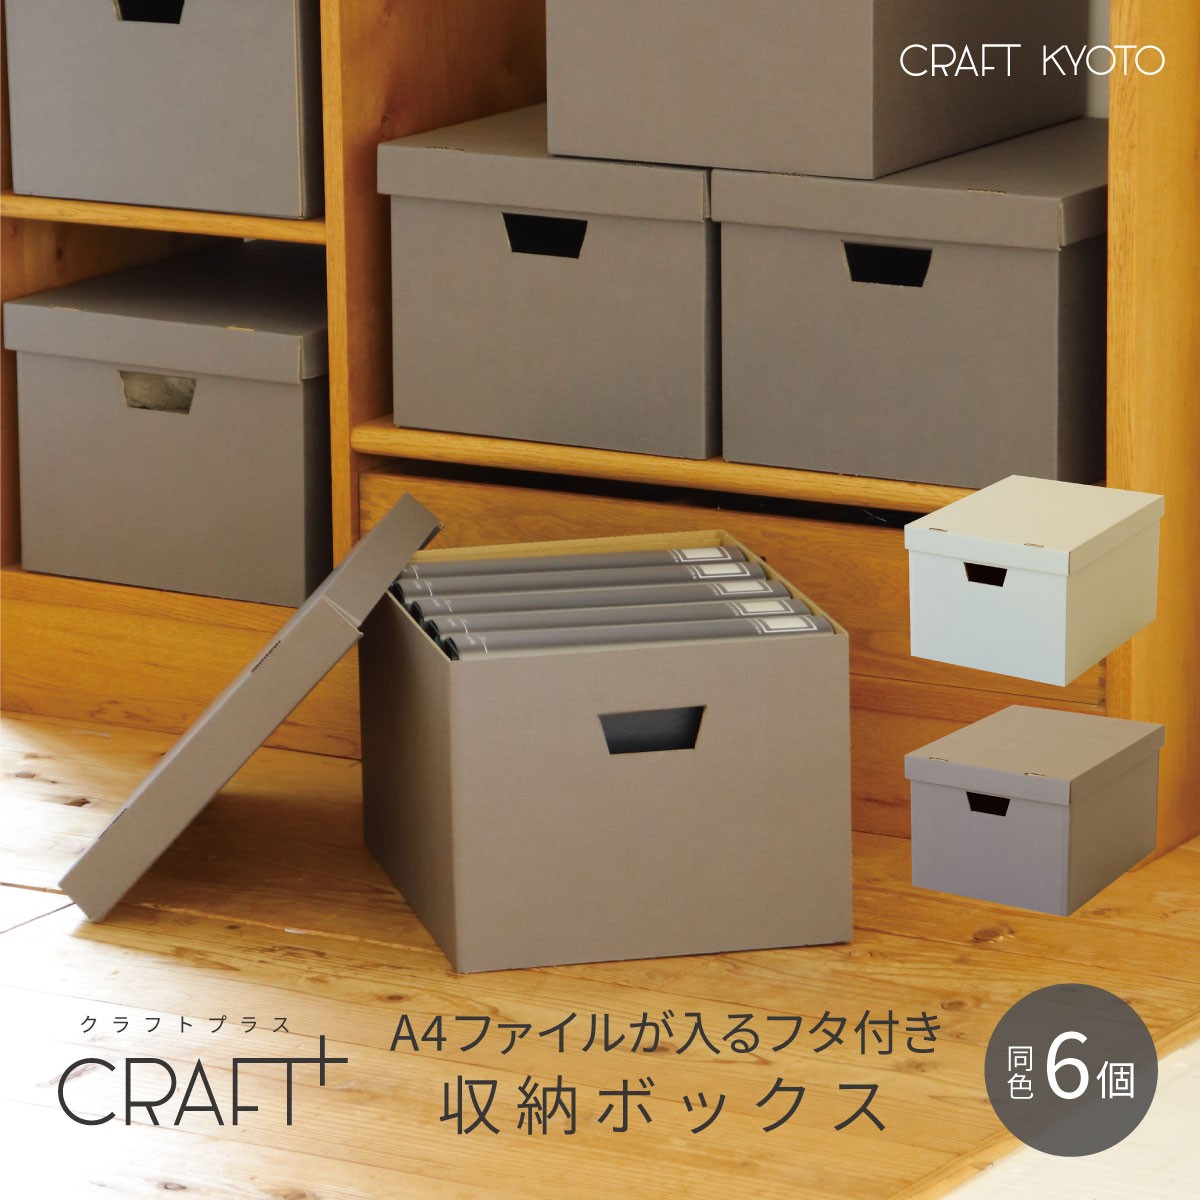 【公式限定】CRAFT+ A4 収納ボックス 同色6個組